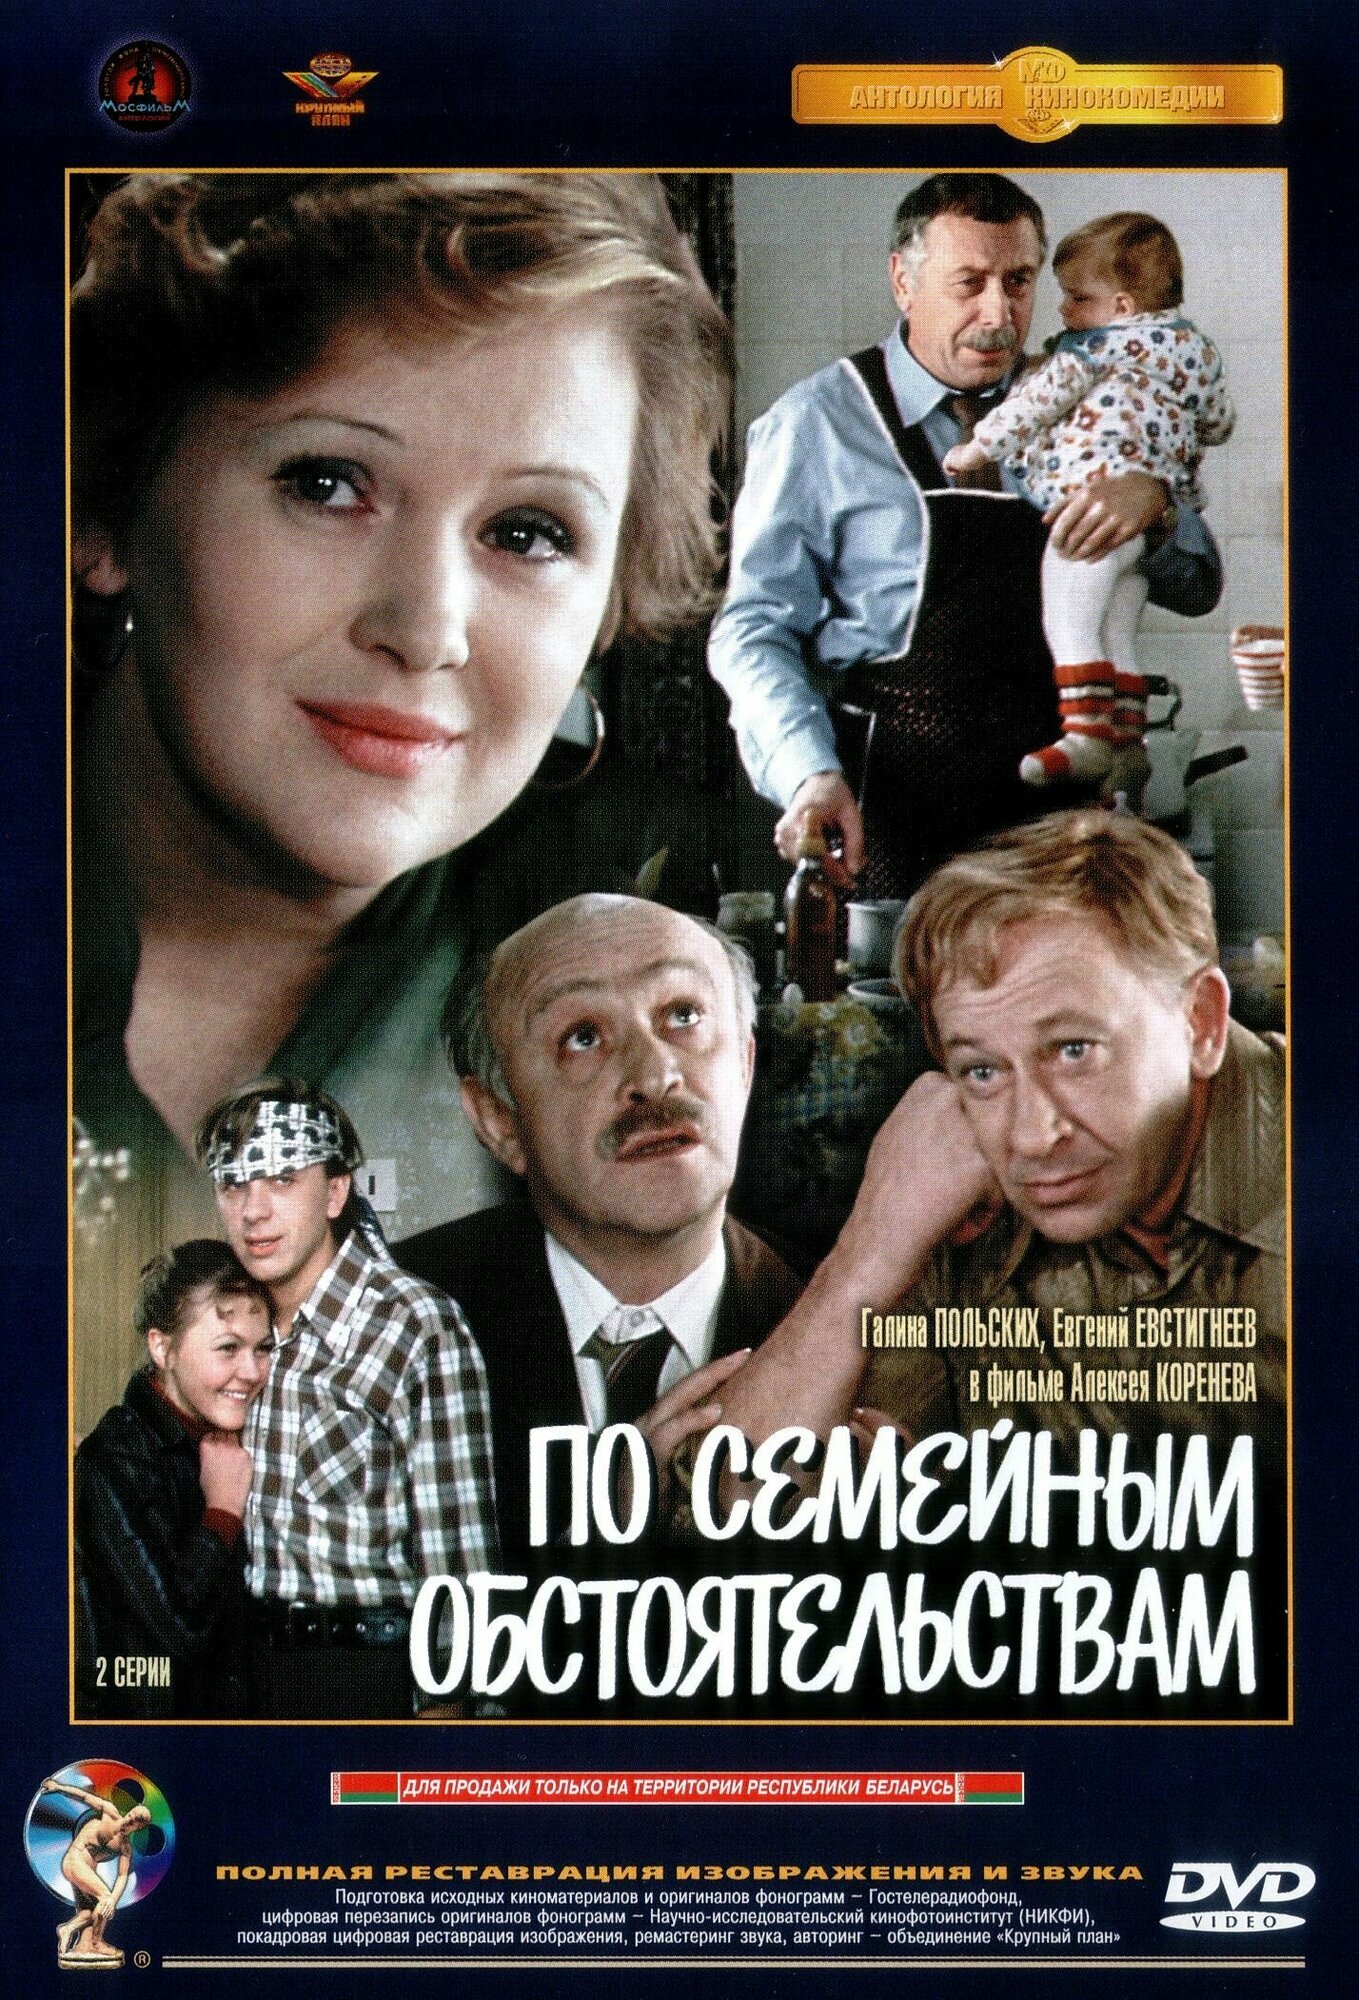 Фильм "По семейным обстоятельствам" 1978г. DVD